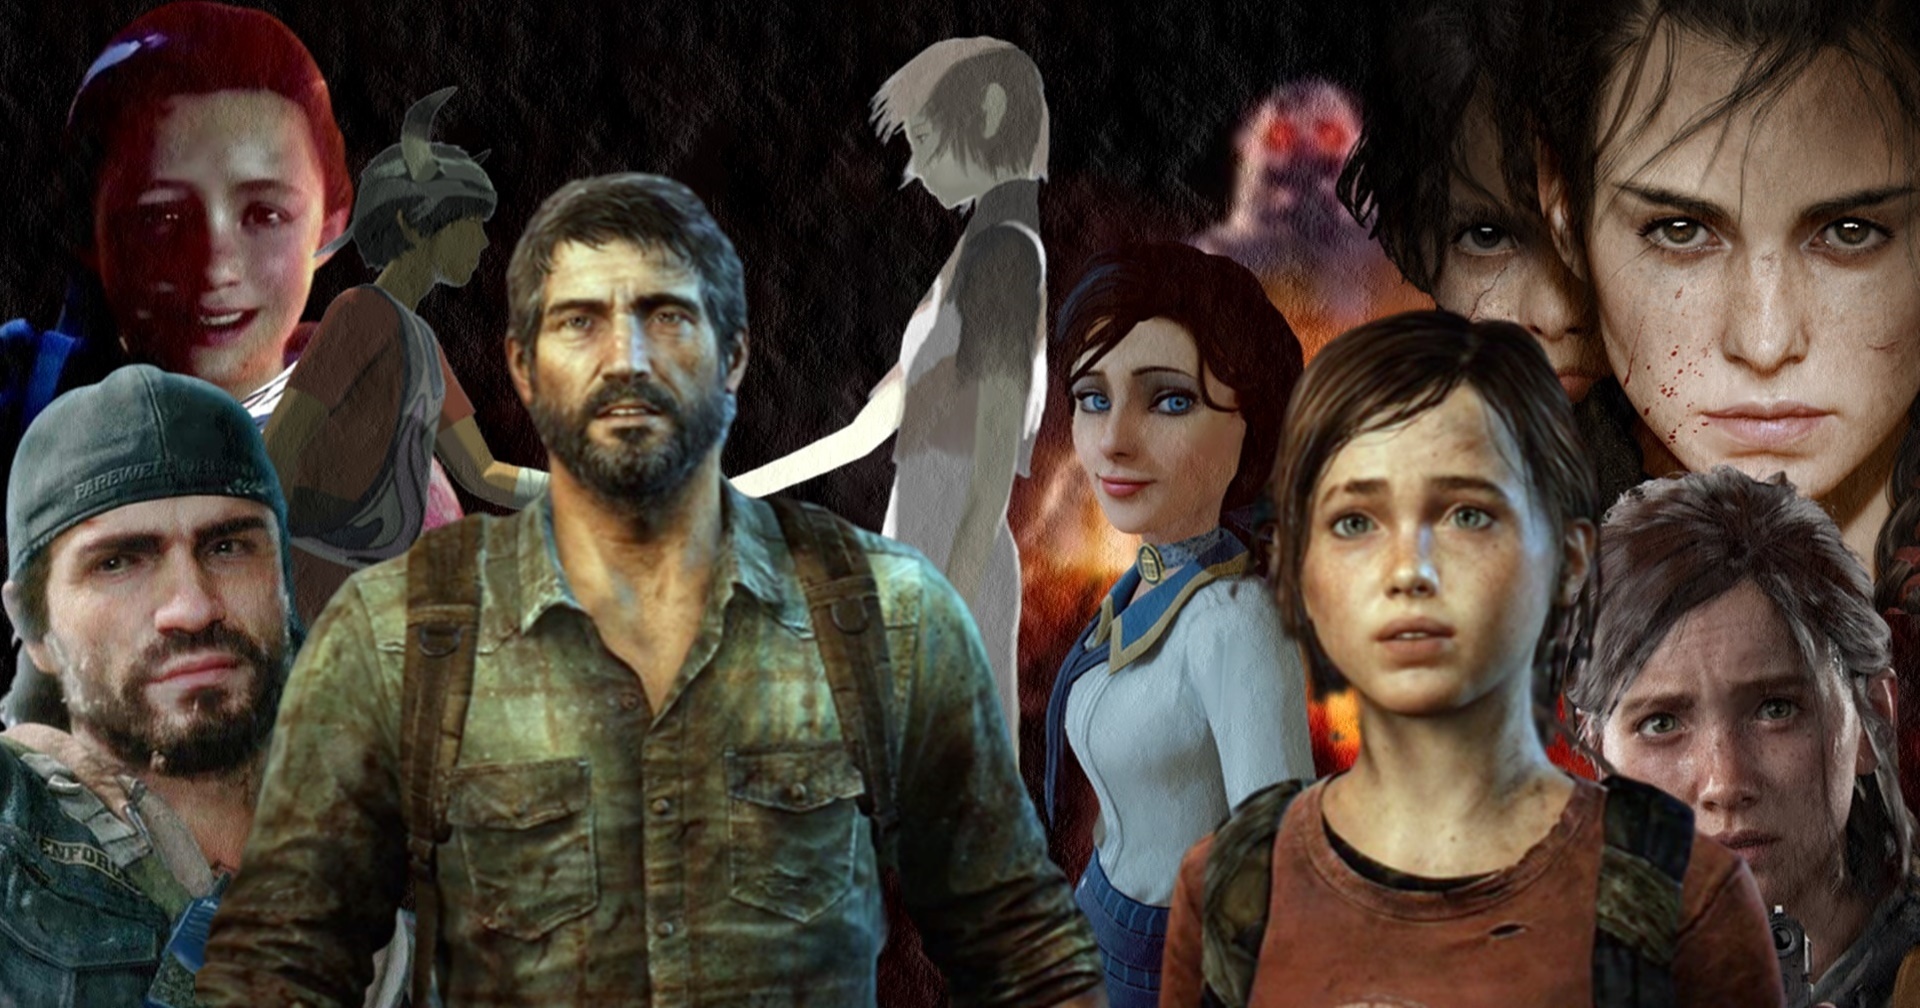 ดูซีรีส์แล้วอารมณ์ค้างมาต่อที่นี่รวมเกมที่ให้อารมณ์เหมือนเล่น The Last of Us